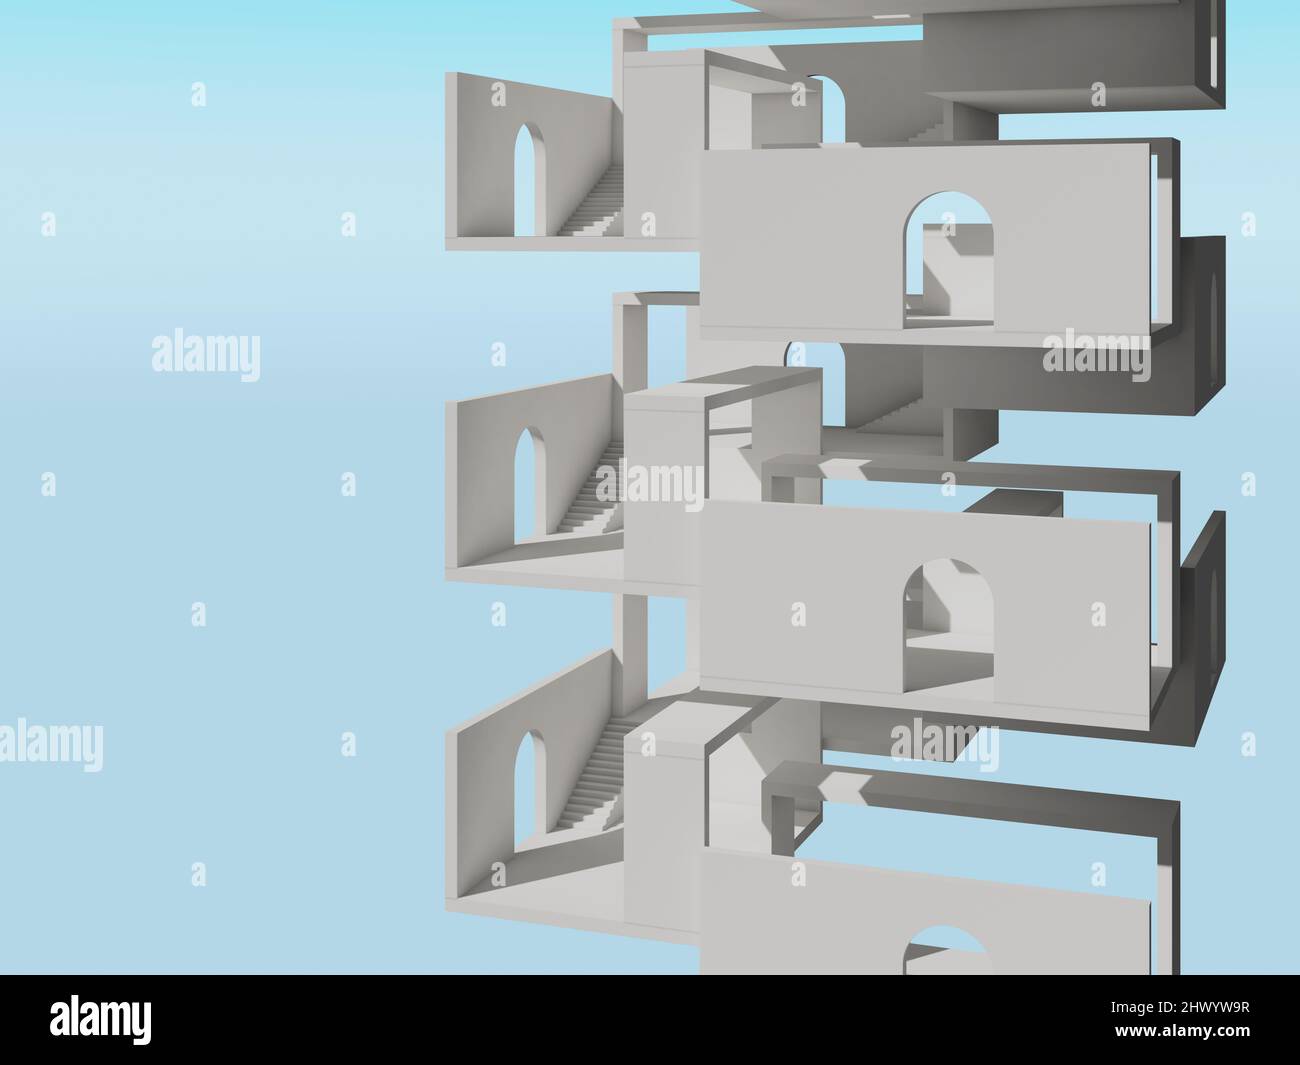 Abstrakte weiße Turmstruktur auf hellblauem Himmel Hintergrund, leere Ebenen mit Treppen und Bogentüren, 3D Rendering Illustration Stockfoto